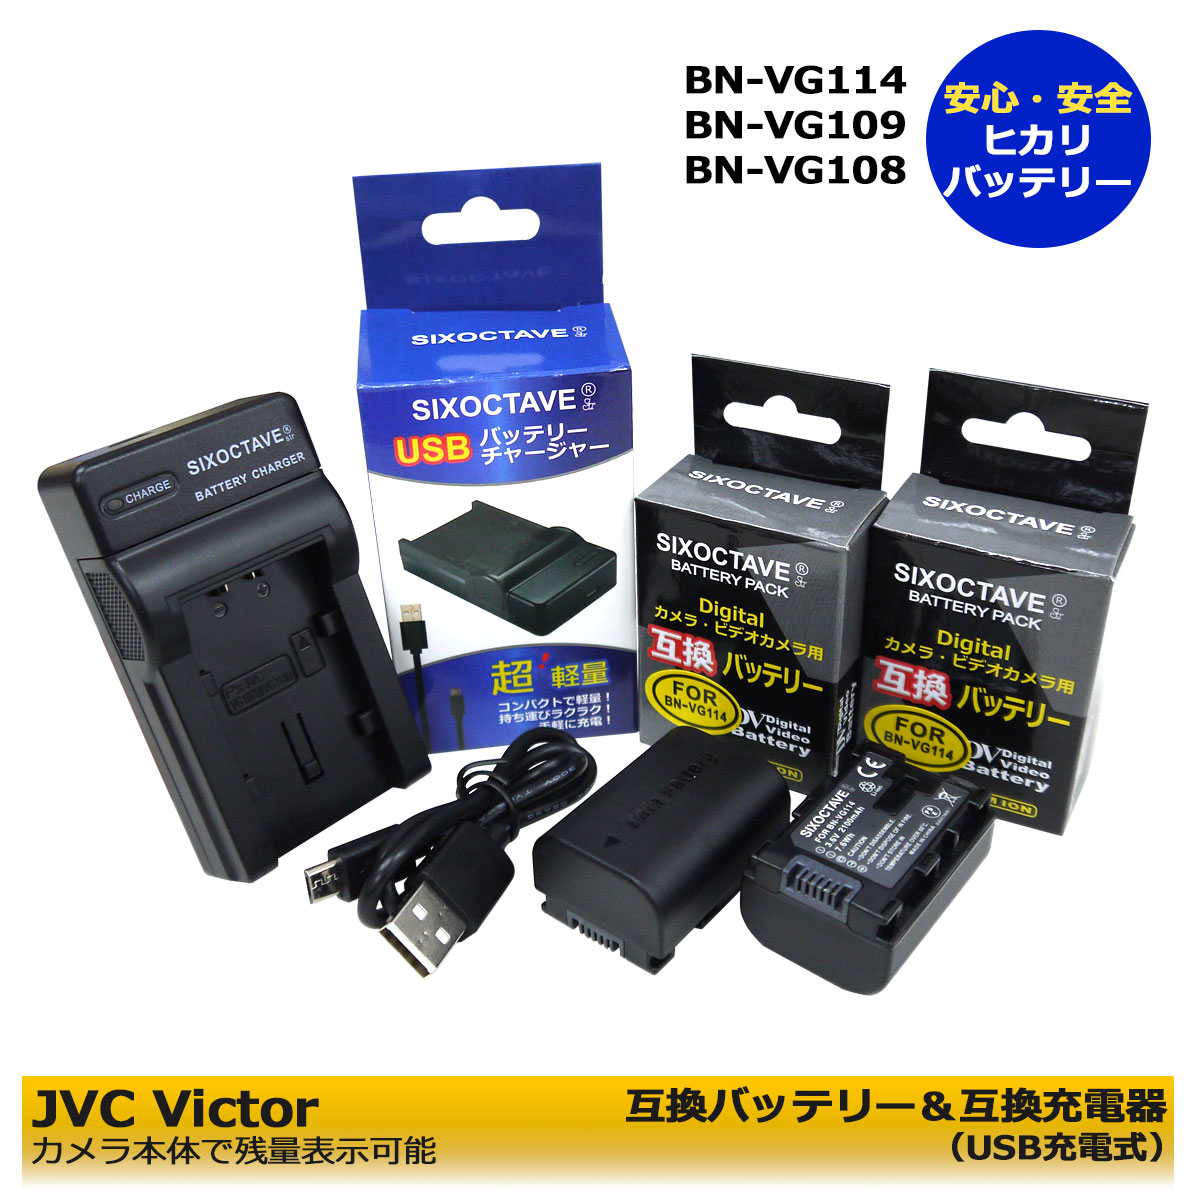 【楽天市場】【送料無料】JVC BN-VG114 / BN-VG107 / BN-VG108